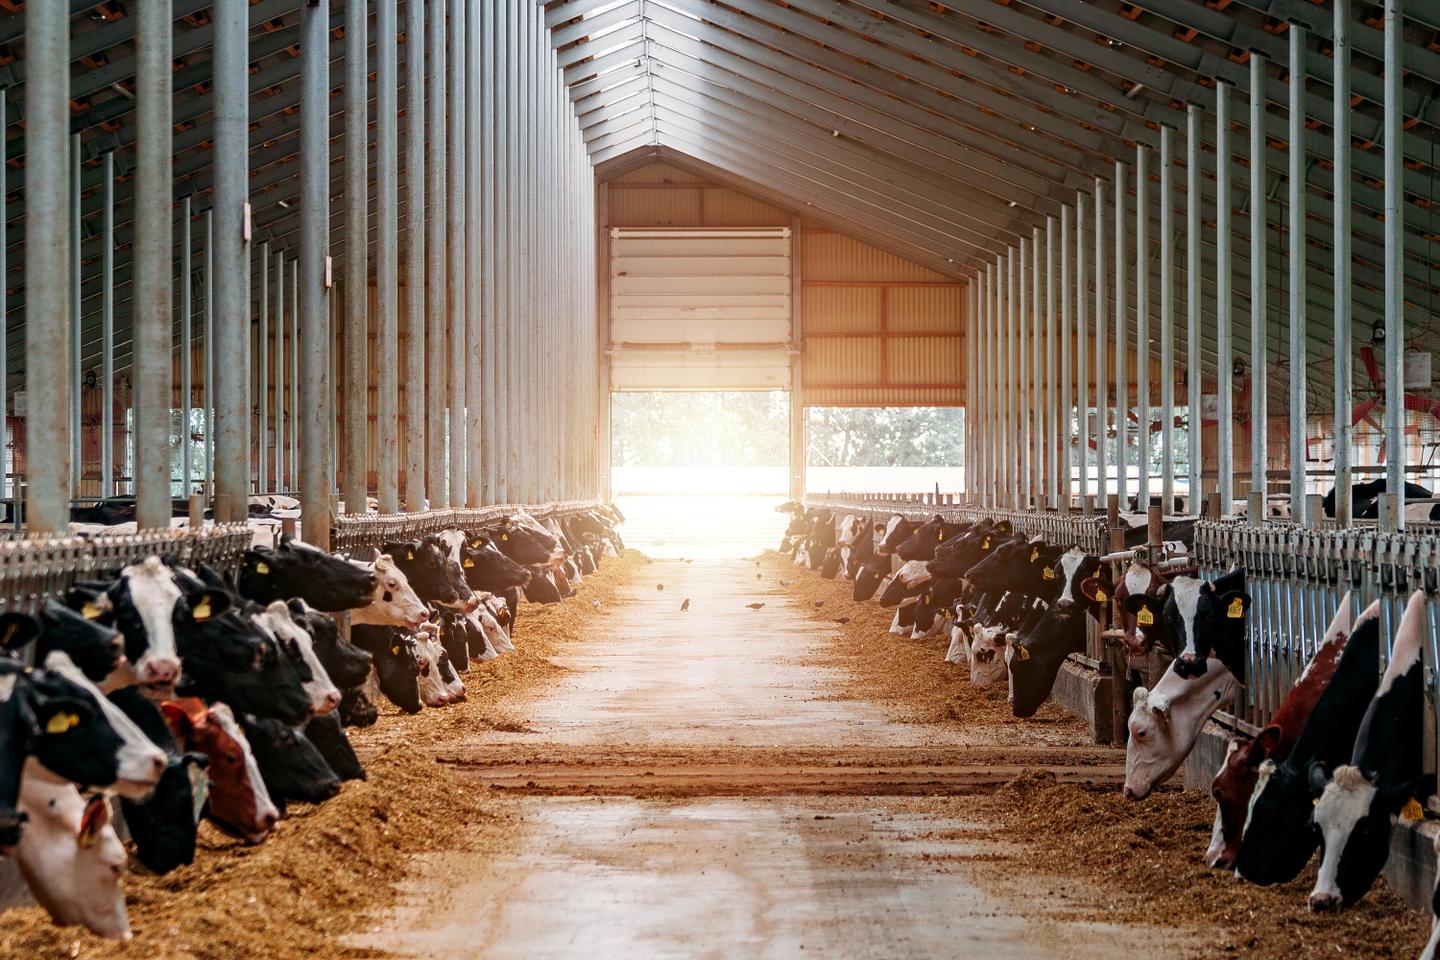 Fressende Kühe in einem Stall mit Sonnenlicht, das durch das Dach scheint.